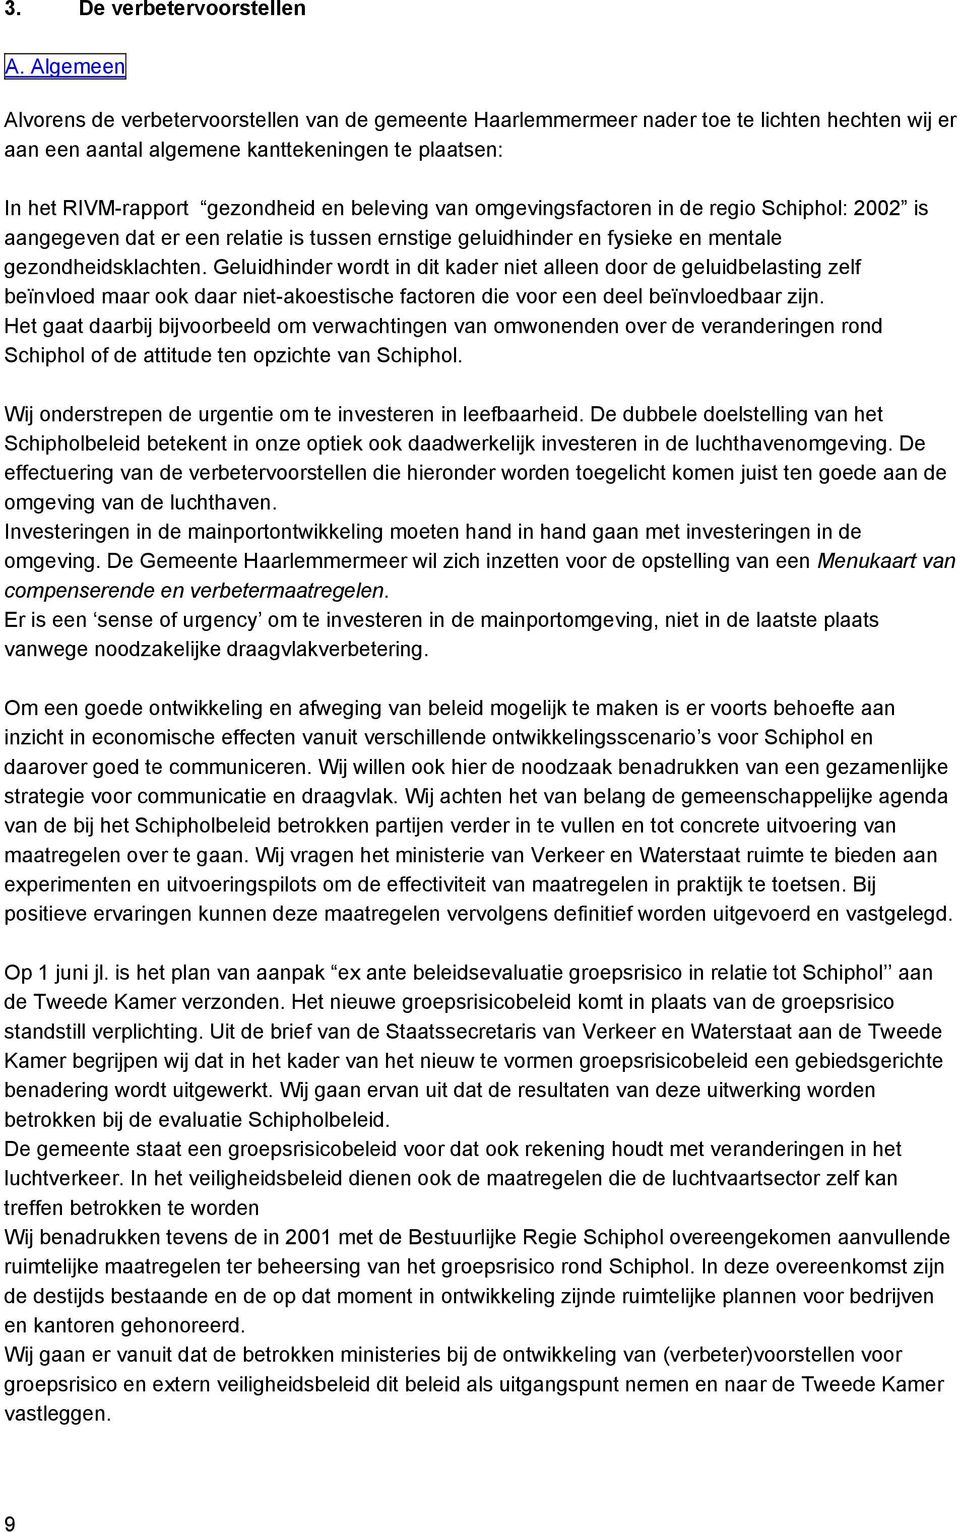 beleving van omgevingsfactoren in de regio Schiphol: 2002 is aangegeven dat er een relatie is tussen ernstige geluidhinder en fysieke en mentale gezondheidsklachten.